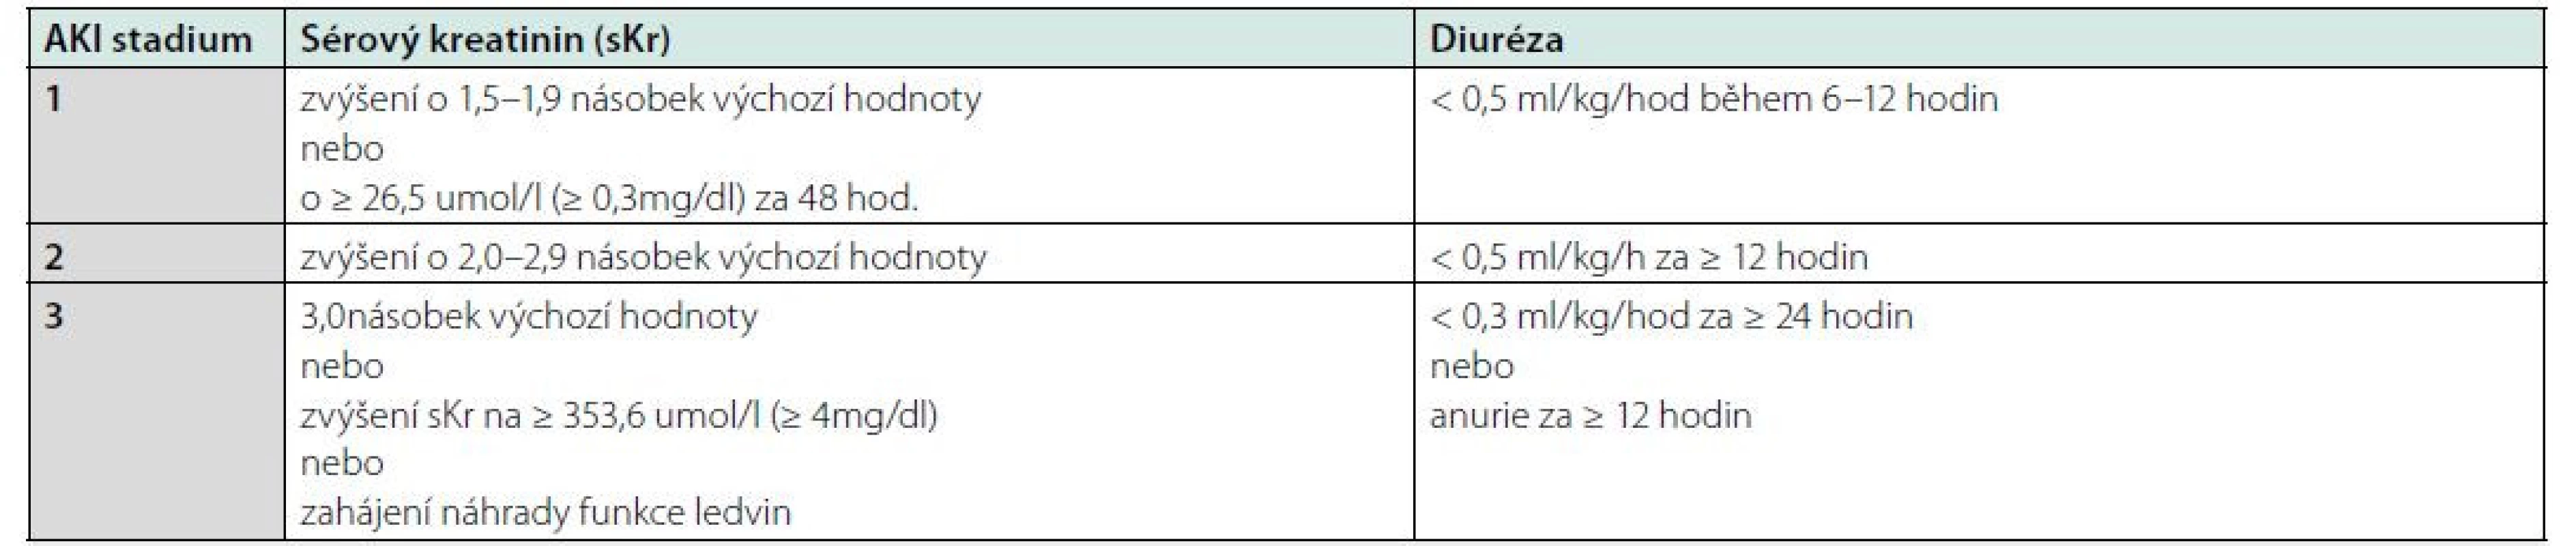 Klasifikace akutního poškození ledvin podle AKIN, upraveno dle KDIGO Clinical Practice Guideline for Acute Kidney Injury 2012 (4)